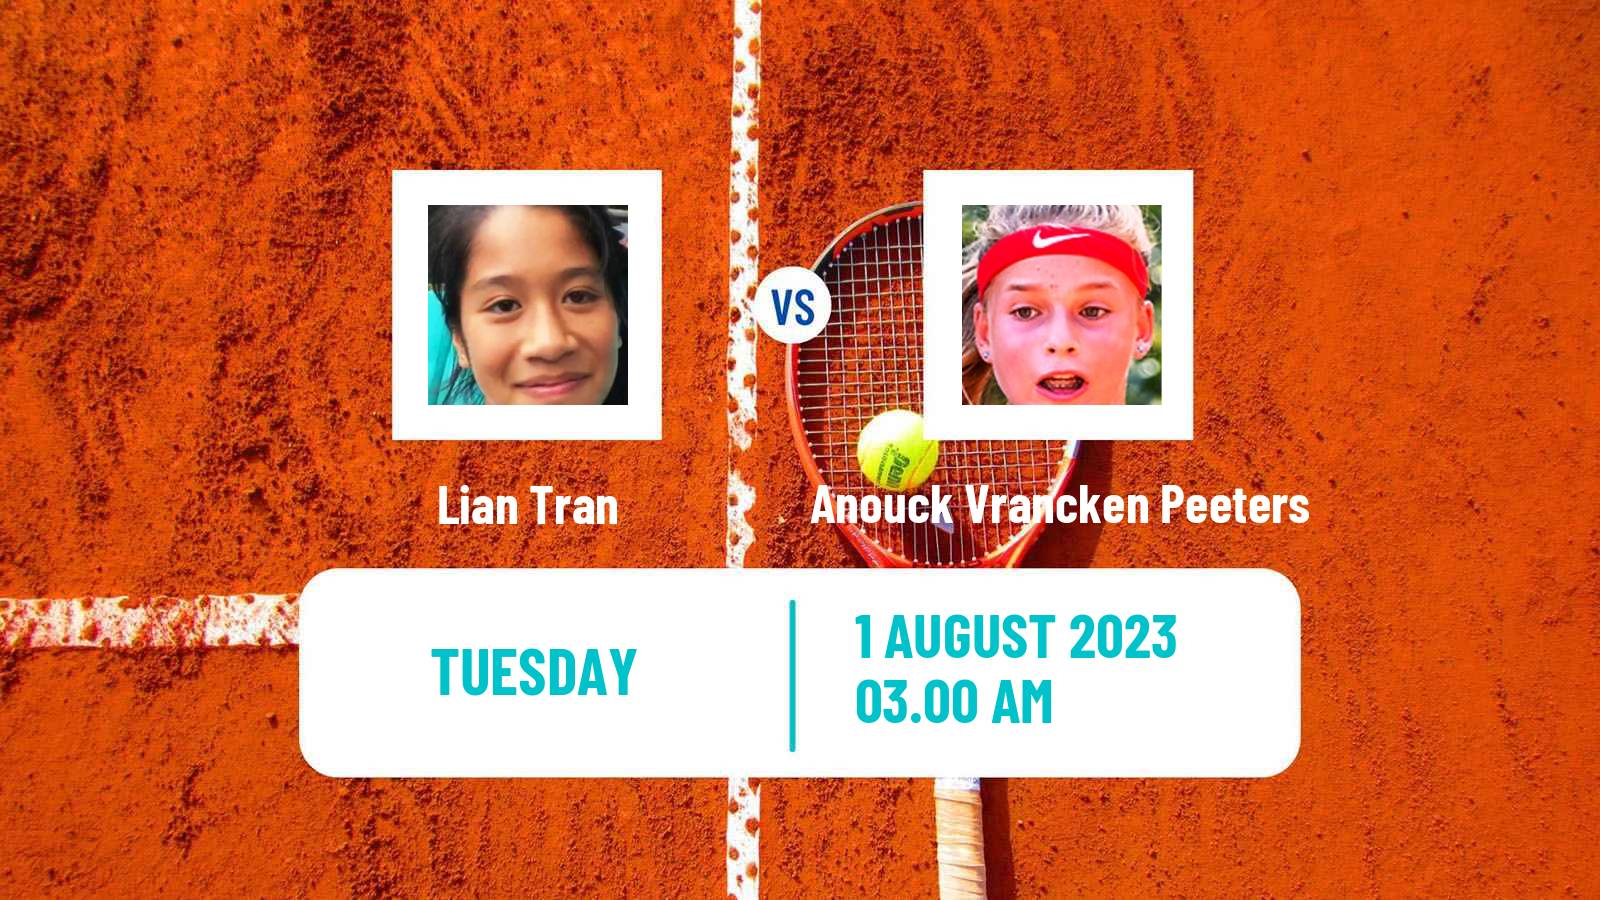 Tennis ITF W15 Eindhoven Women Lian Tran - Anouck Vrancken Peeters